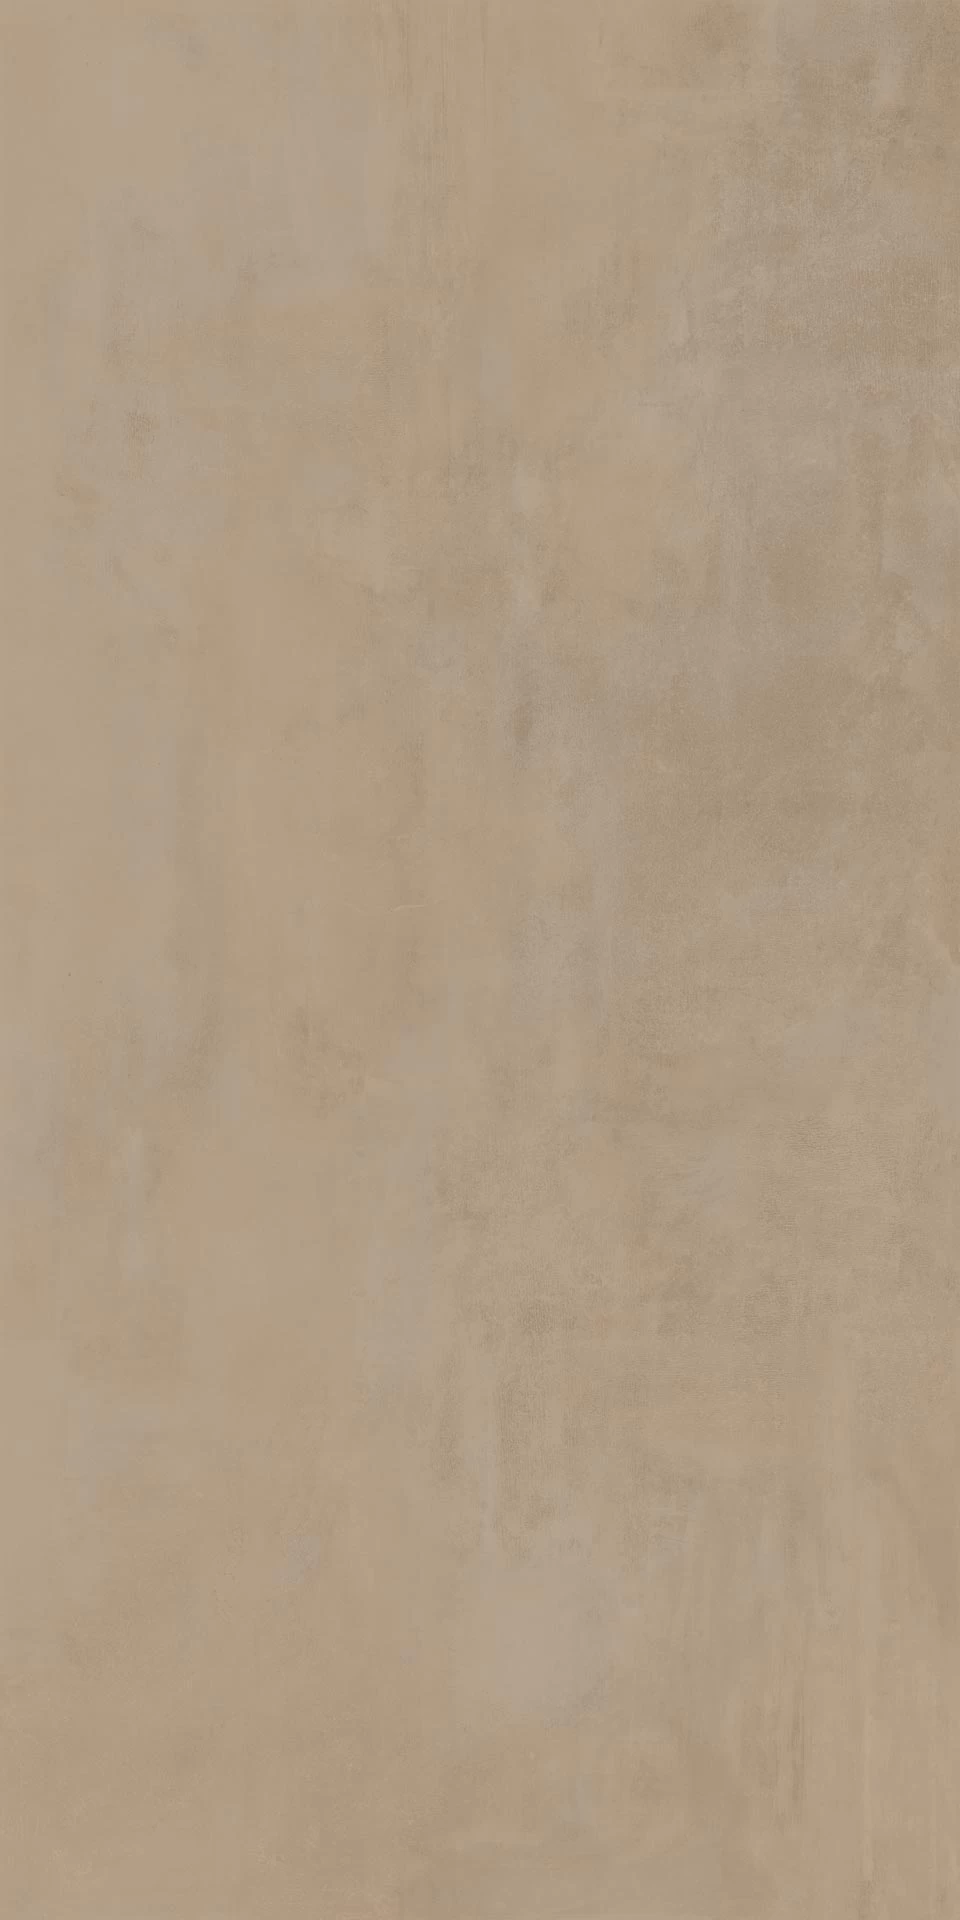 boost-pro-clay-atlas-plan-керамогранит-с-эффектом-цемента-коричнево-серого-цвета-для-стен